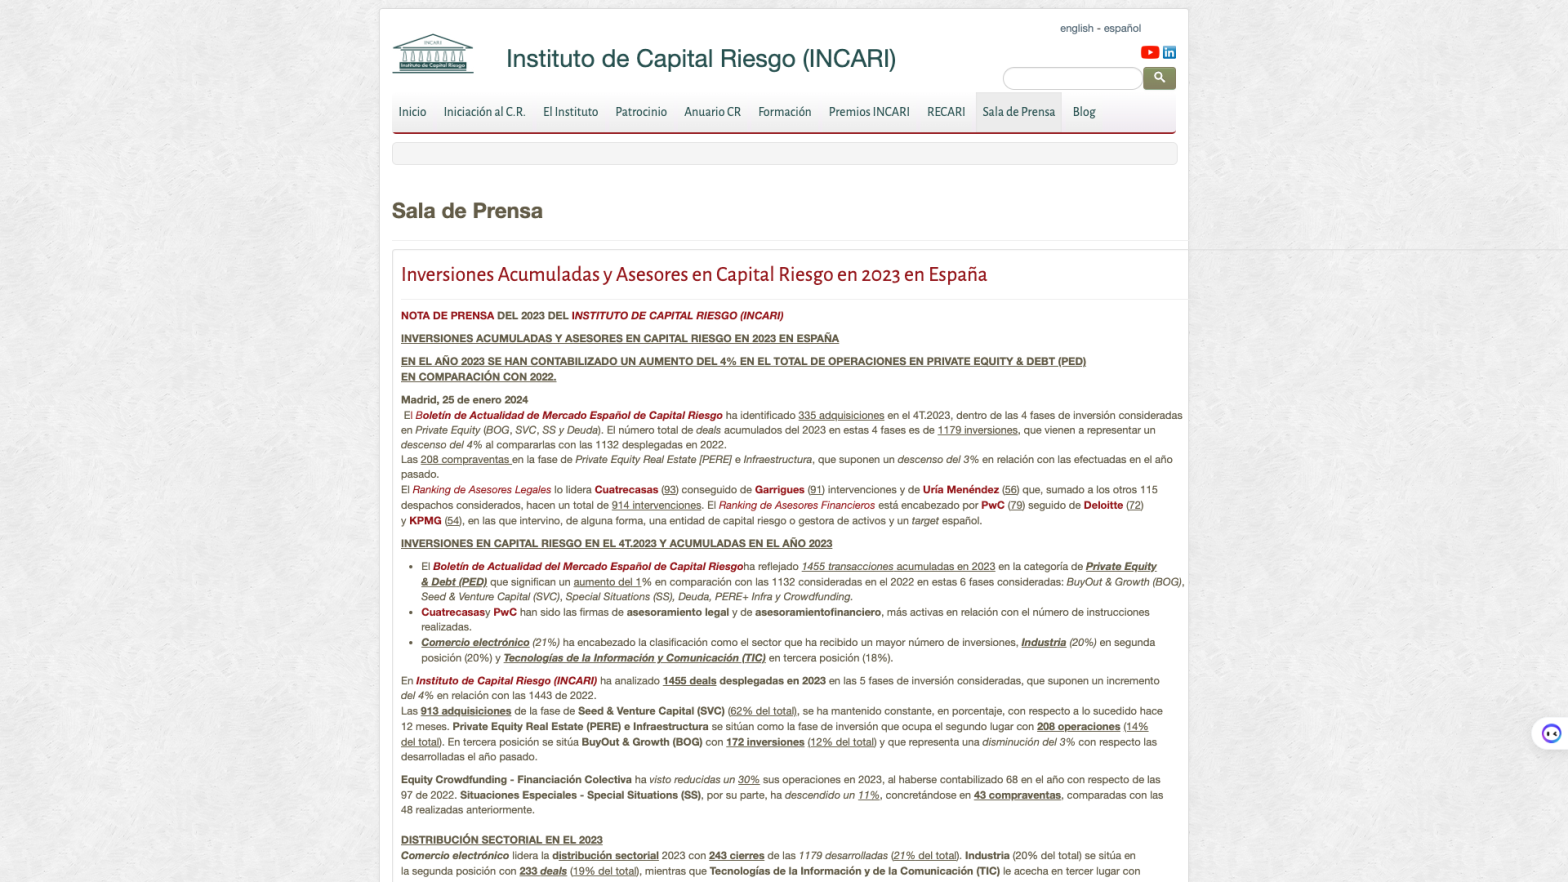 Inversiones Acumuladas y Asesores en Capital Riesgo en 2023 en España